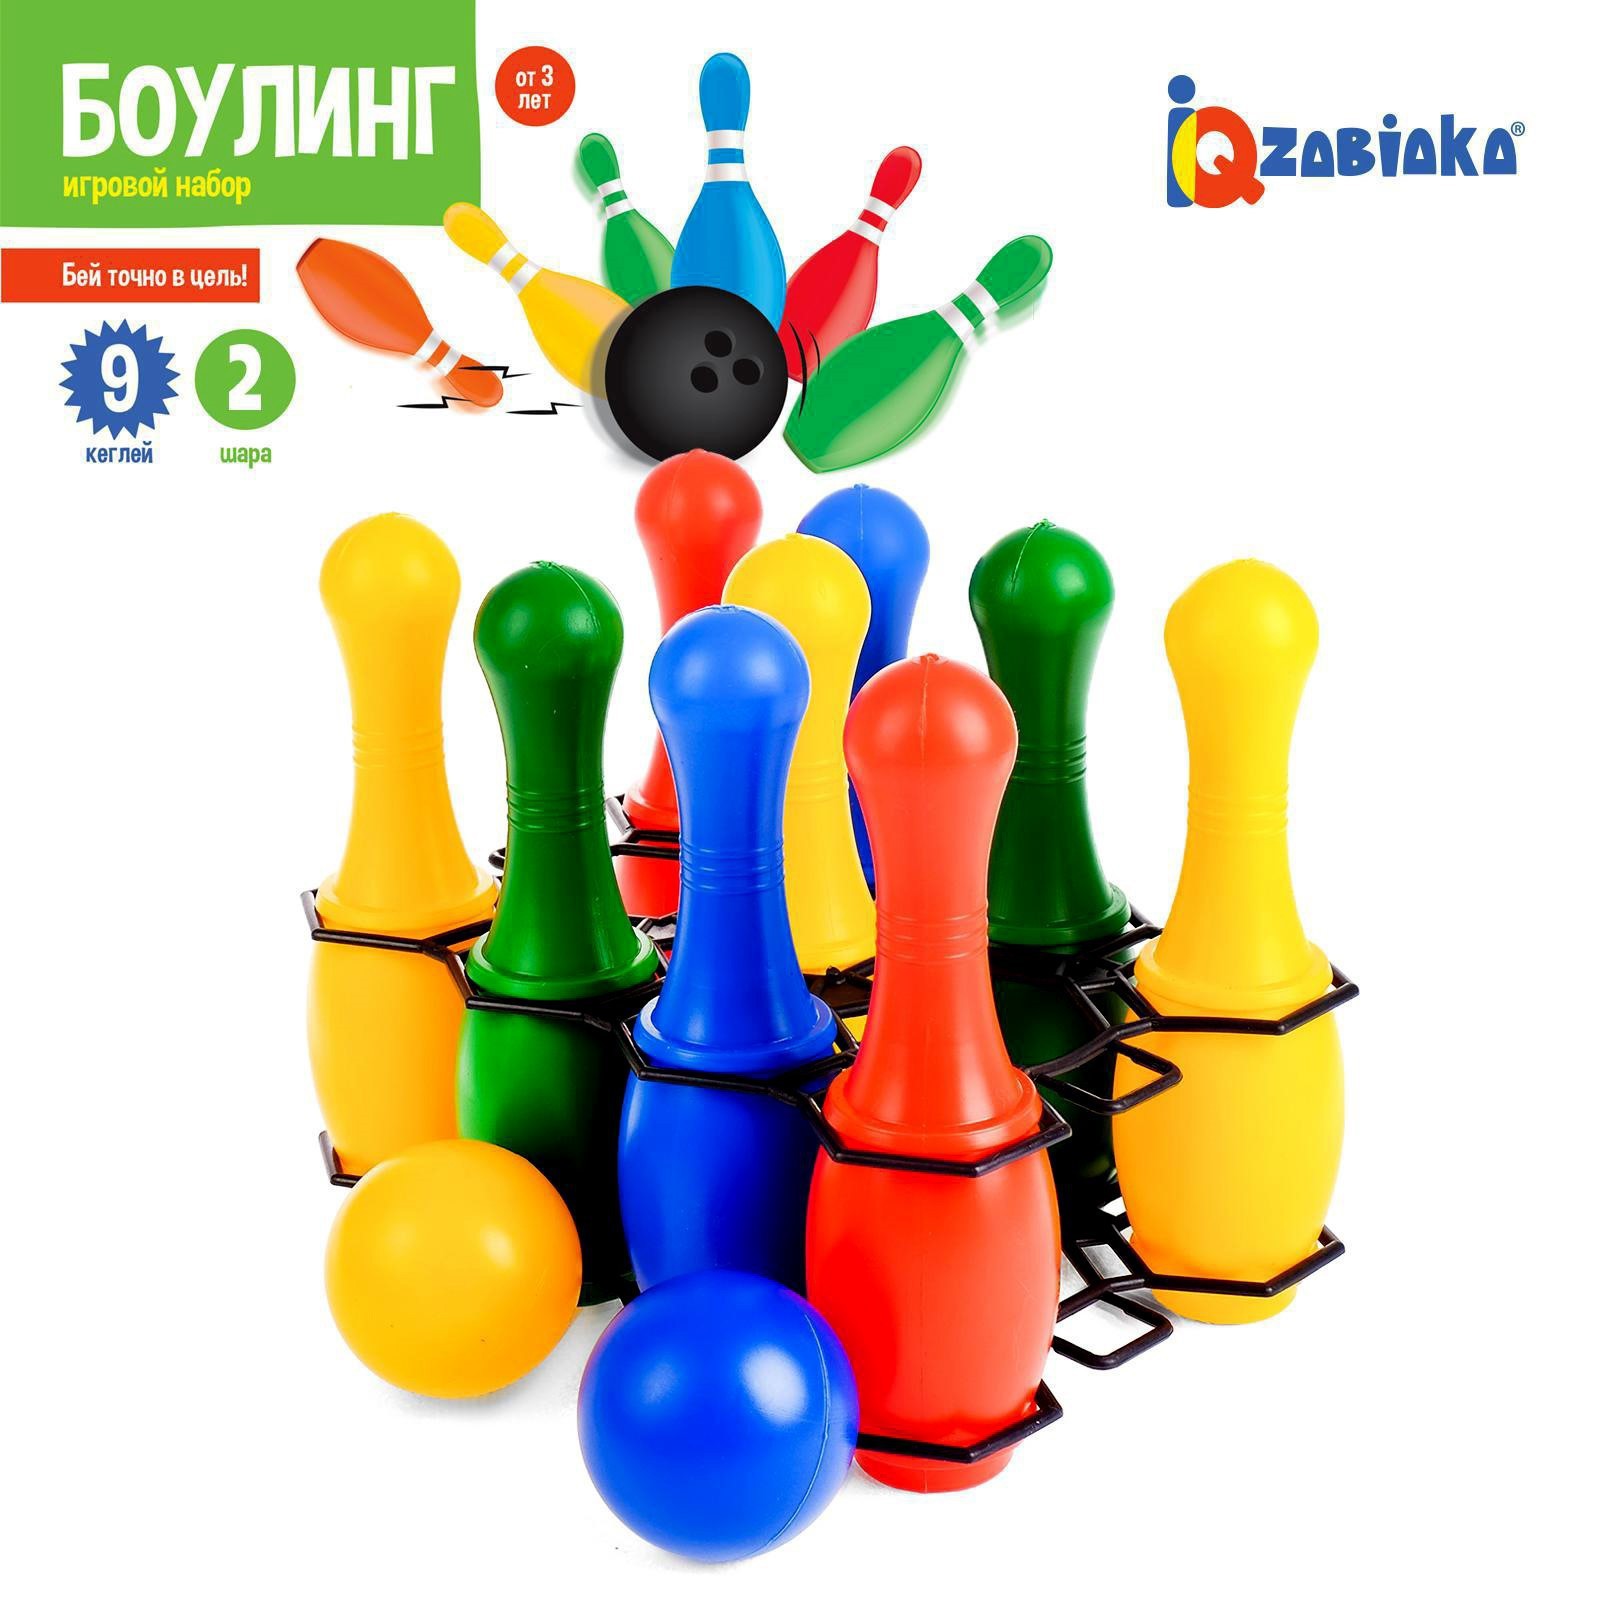 Боулинг IQ-ZABIAKA цветной: 9 кеглей 2 шара - фото 1